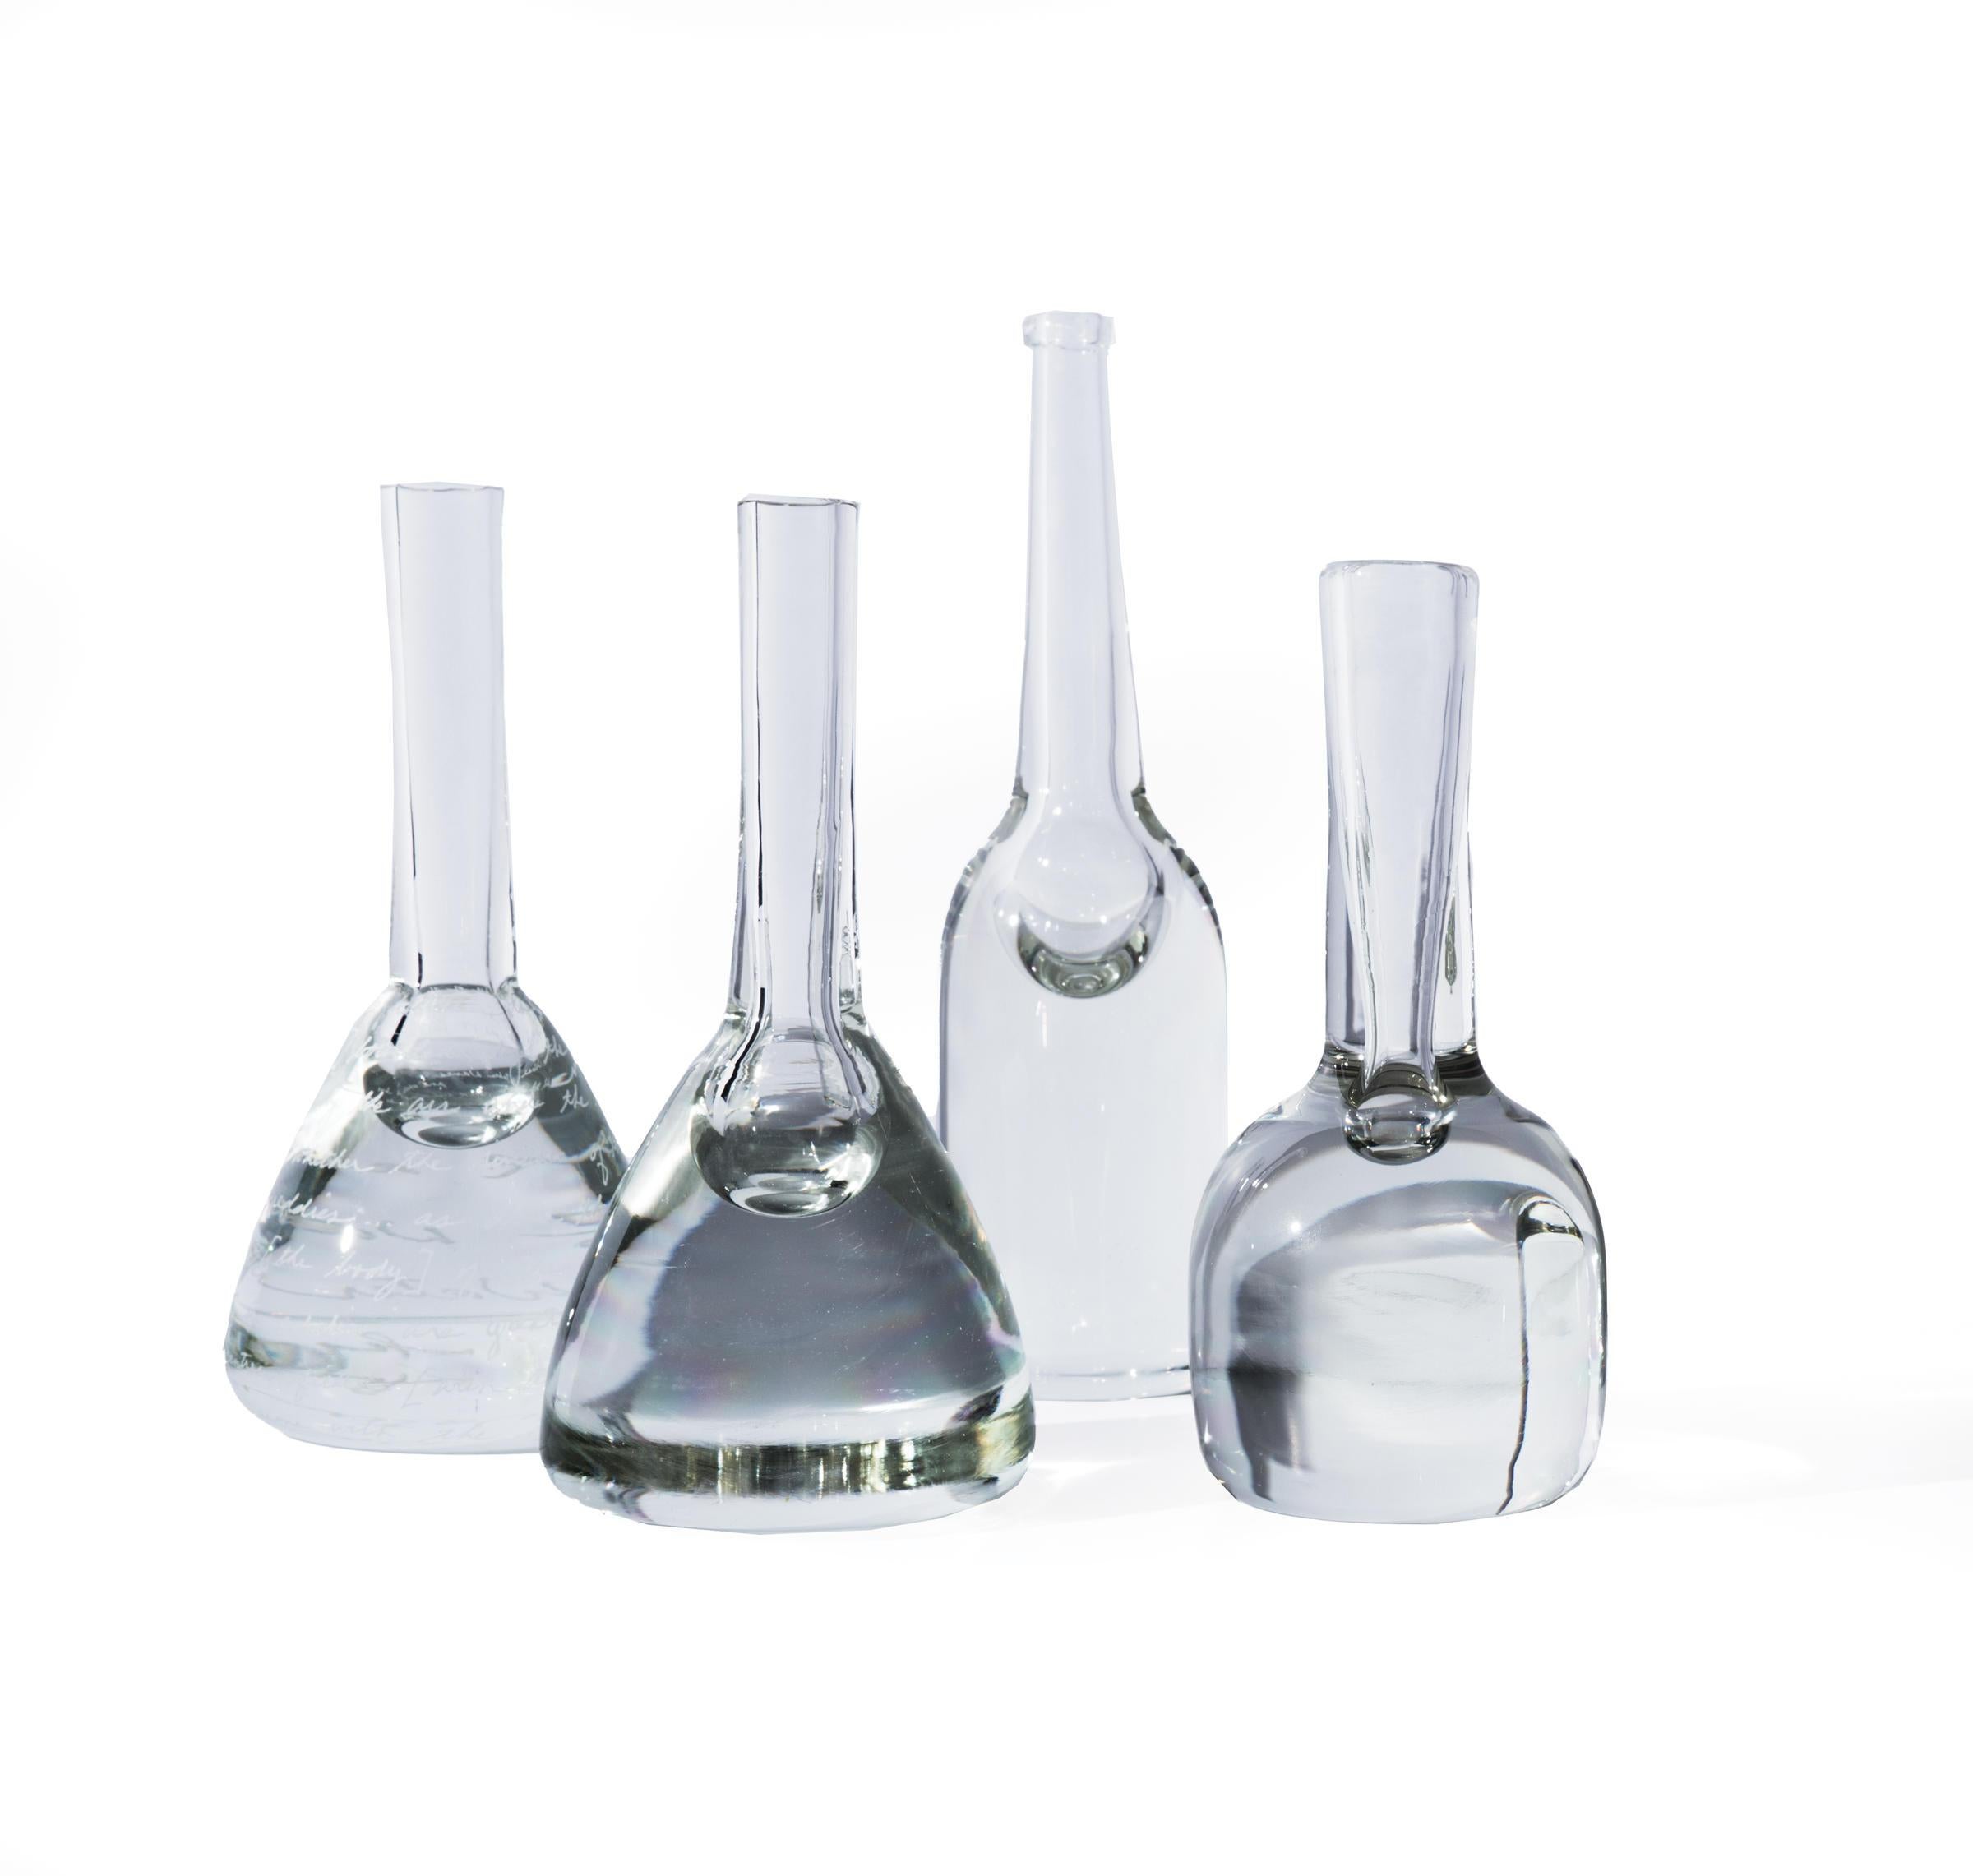 Modern HOLLY HUNT Handmade 807 Solid Crystal Vase by Alison Berger Glassworks